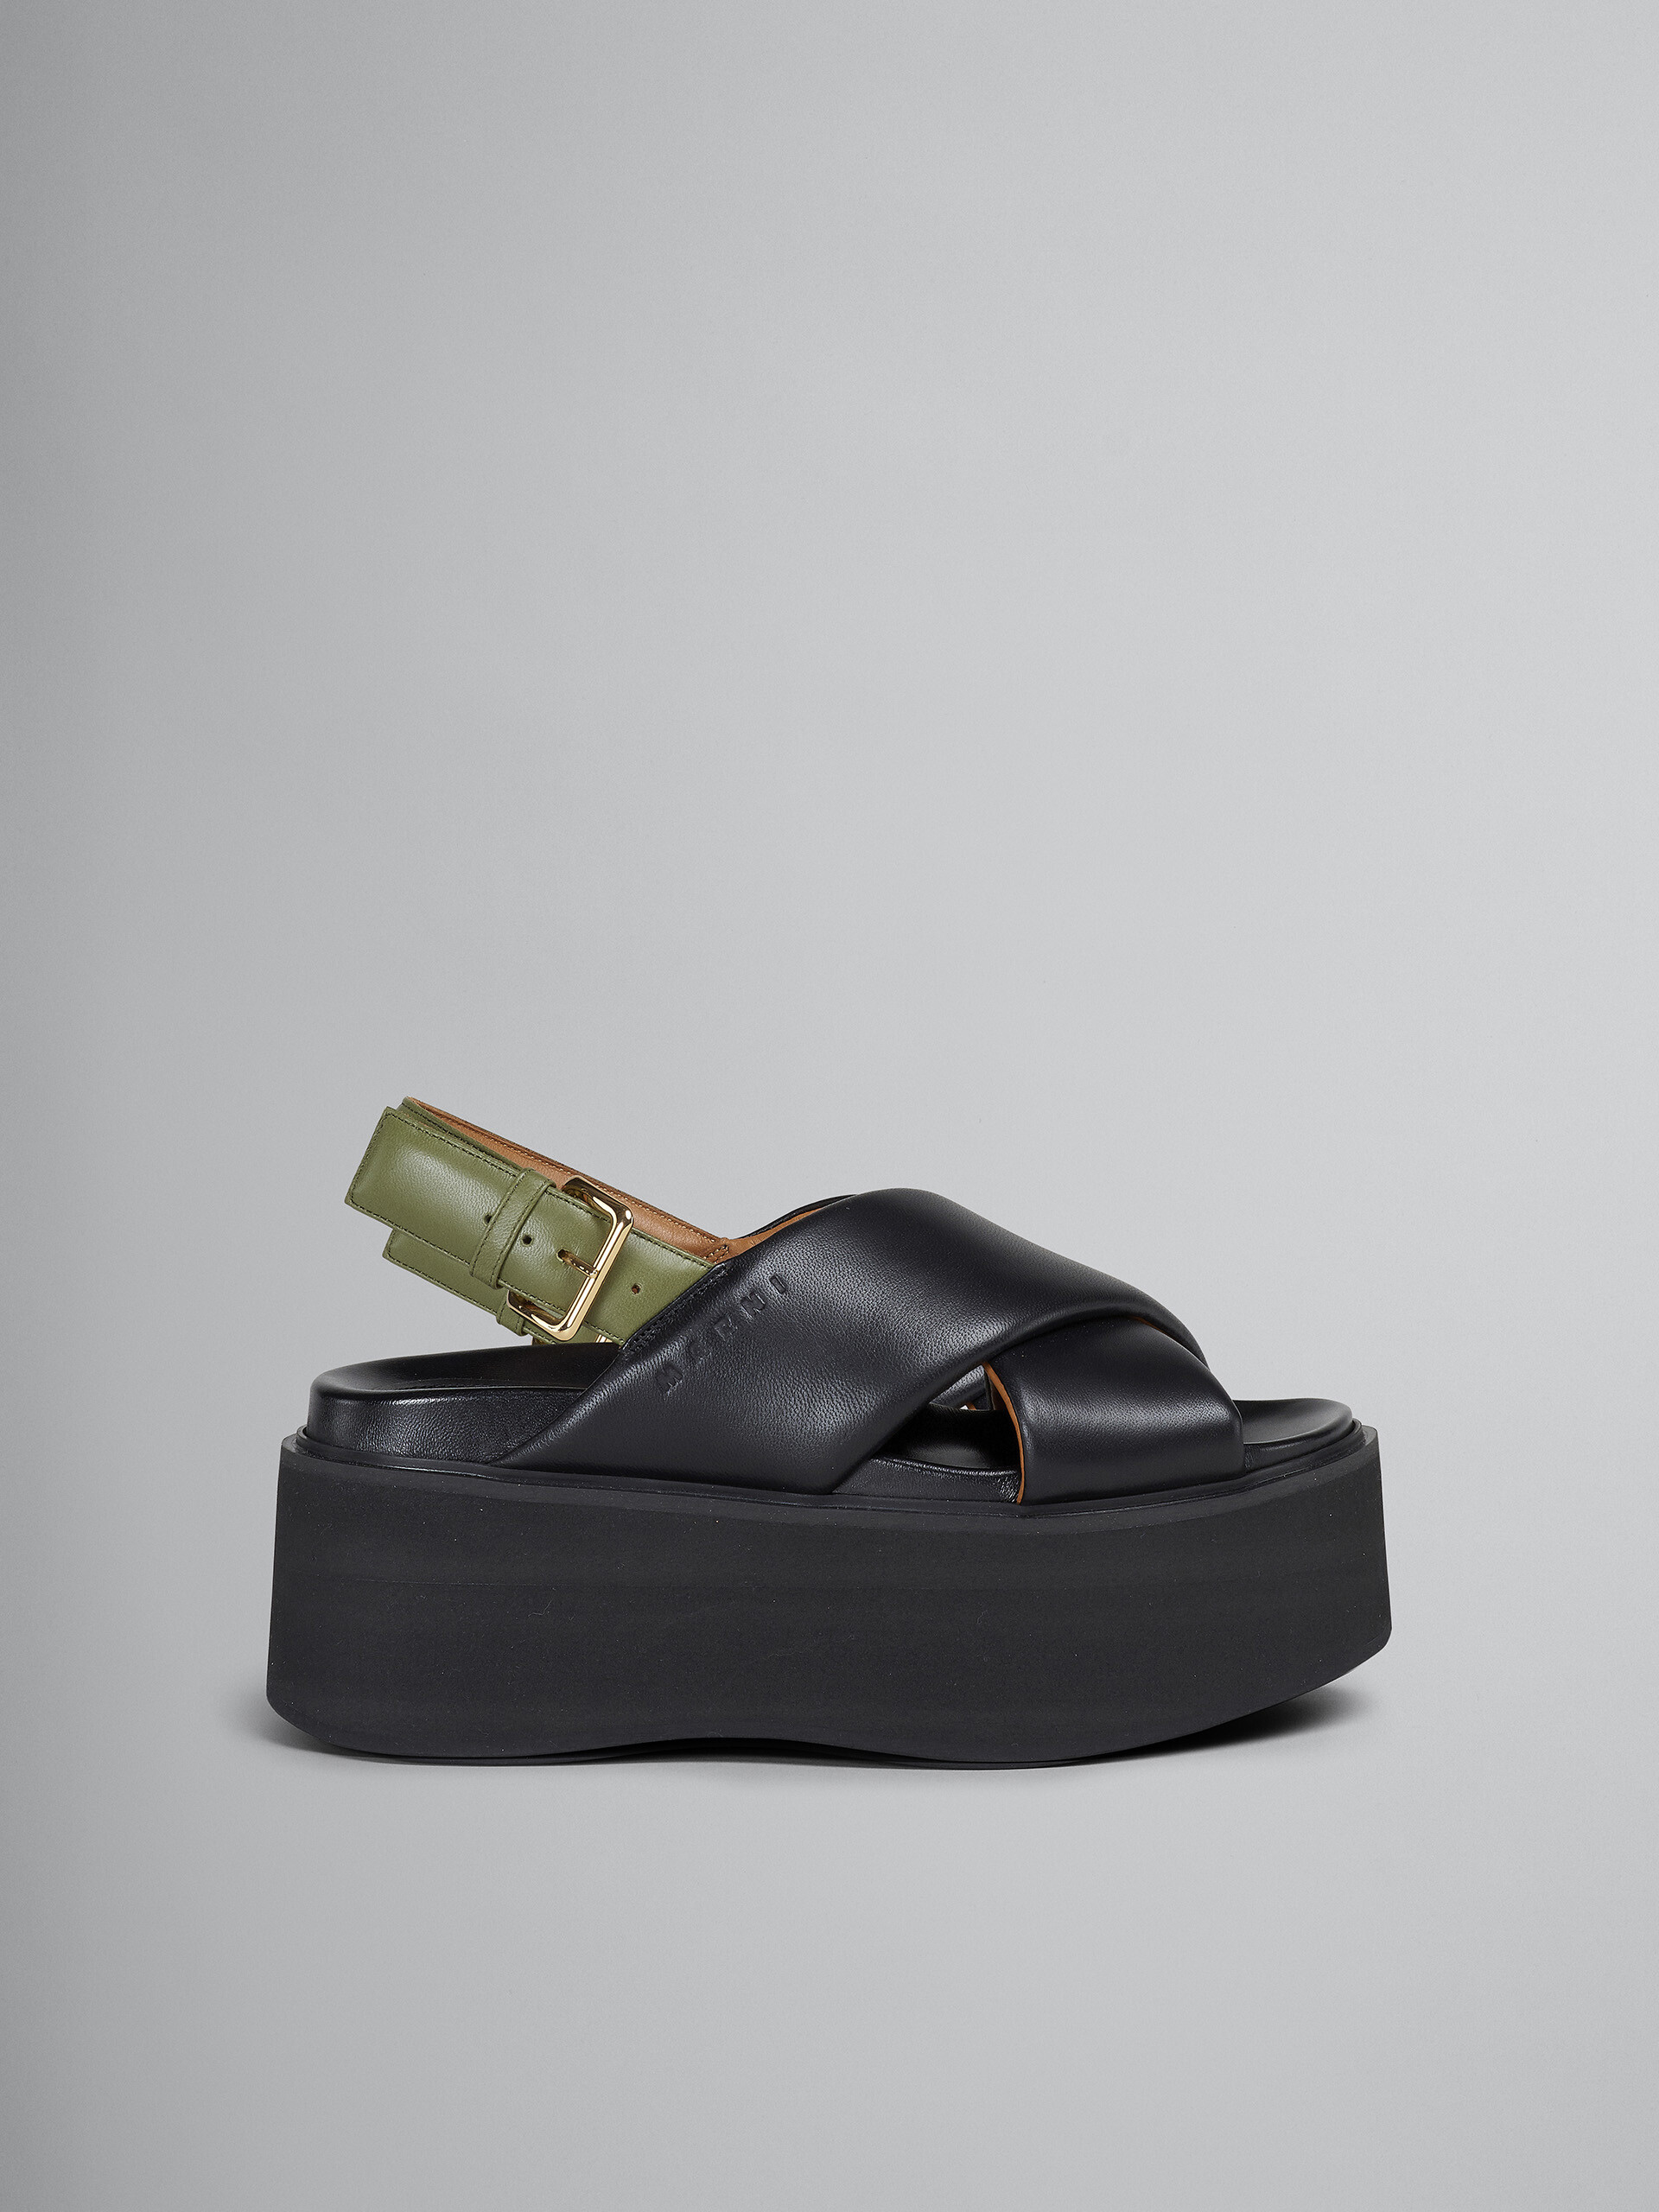 블랙 및 그린 가죽 웨지 - Sandals - Image 1